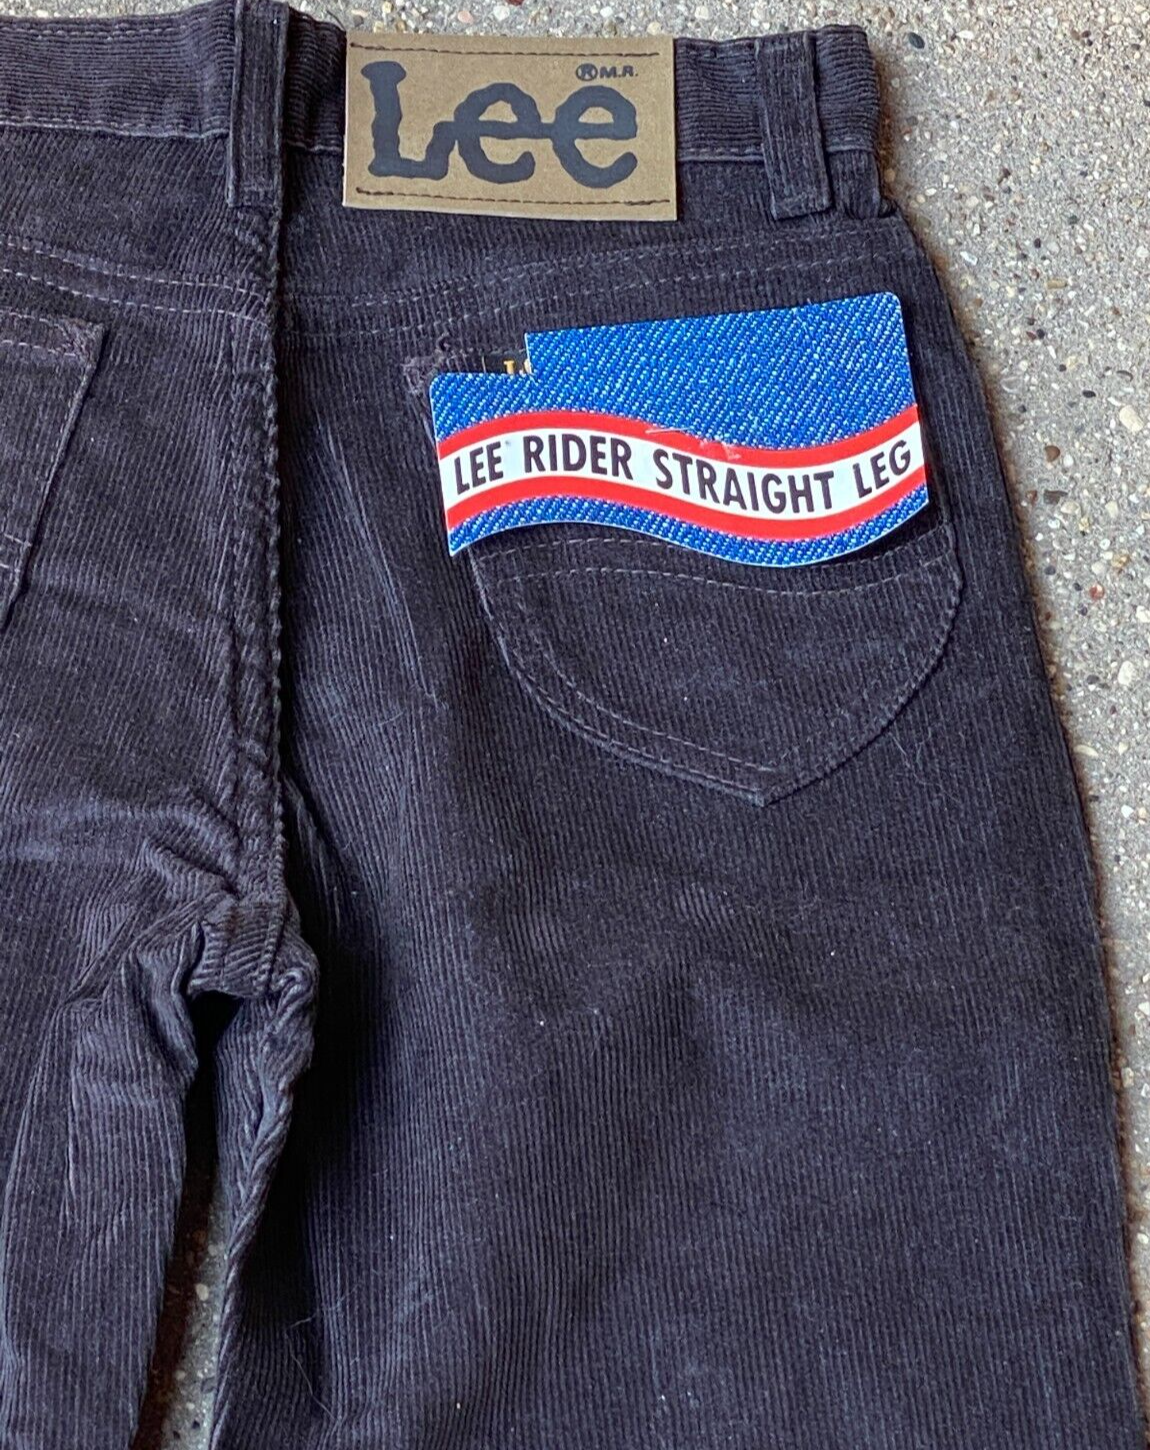 Lee Corduroy Black Pants 14 Slim New Old stock 26" x 29" Vintage 1970s - $33.88